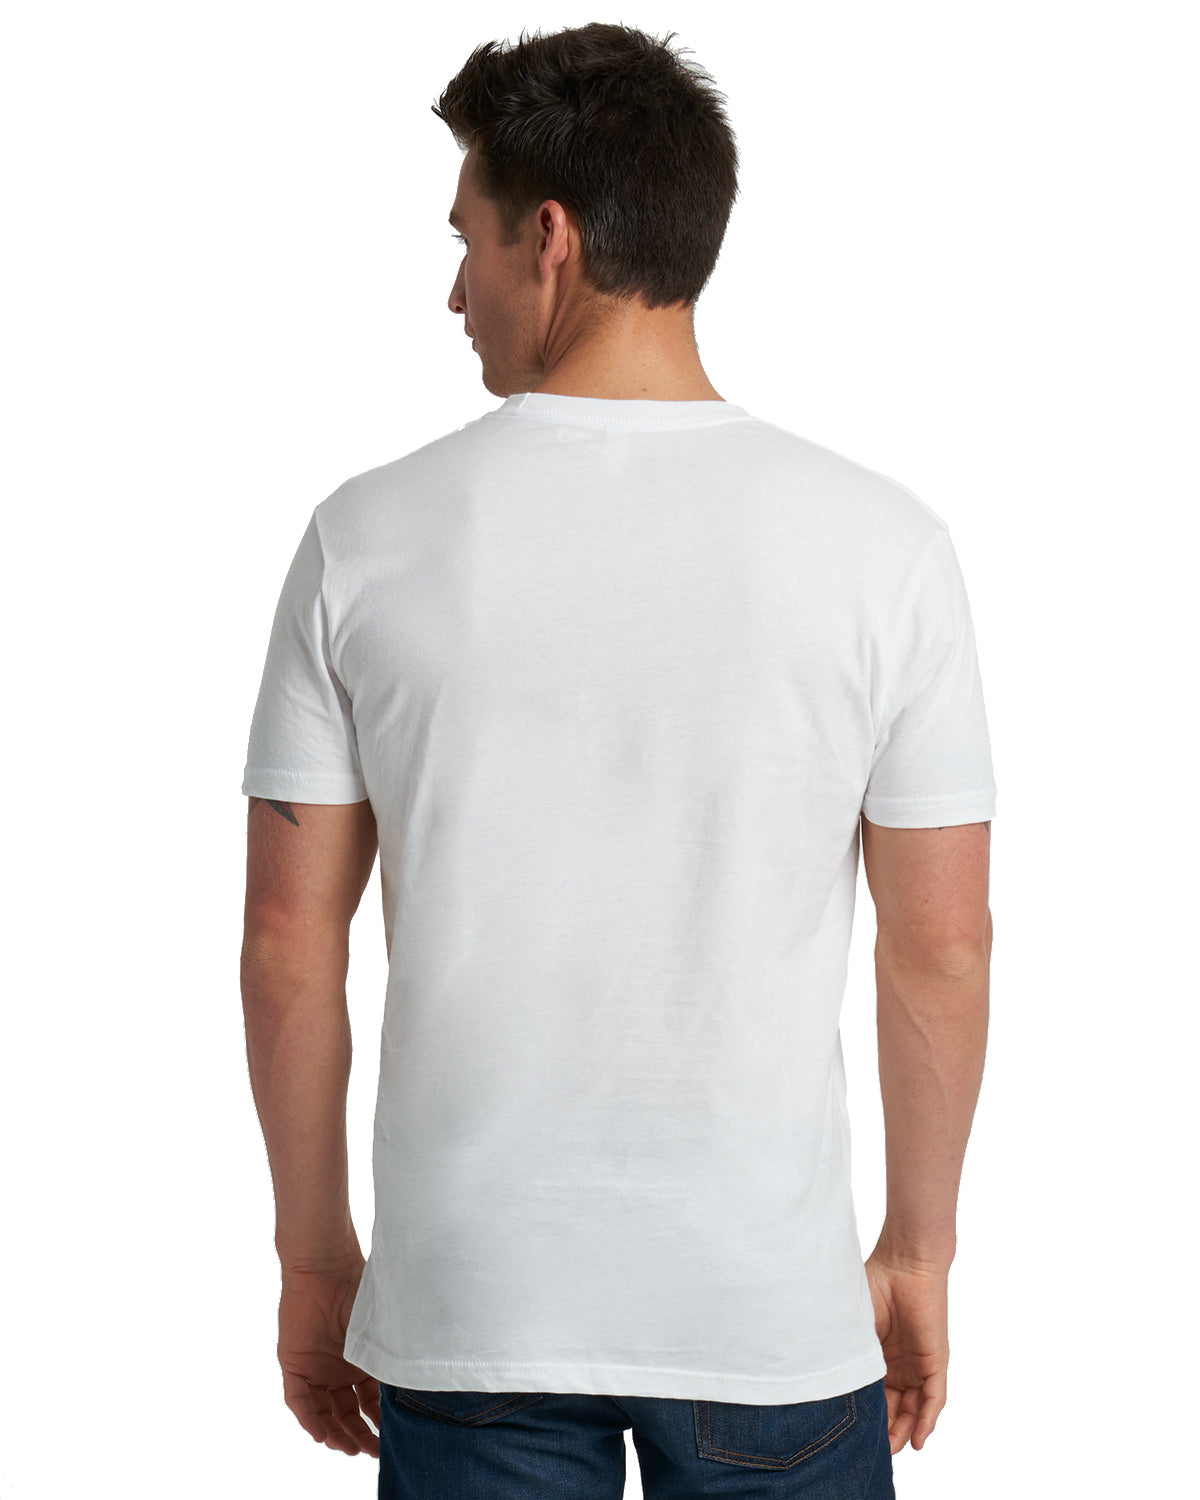 Soft Cotton Short Sleeve White Custom T Shirt | Lifestyle Back